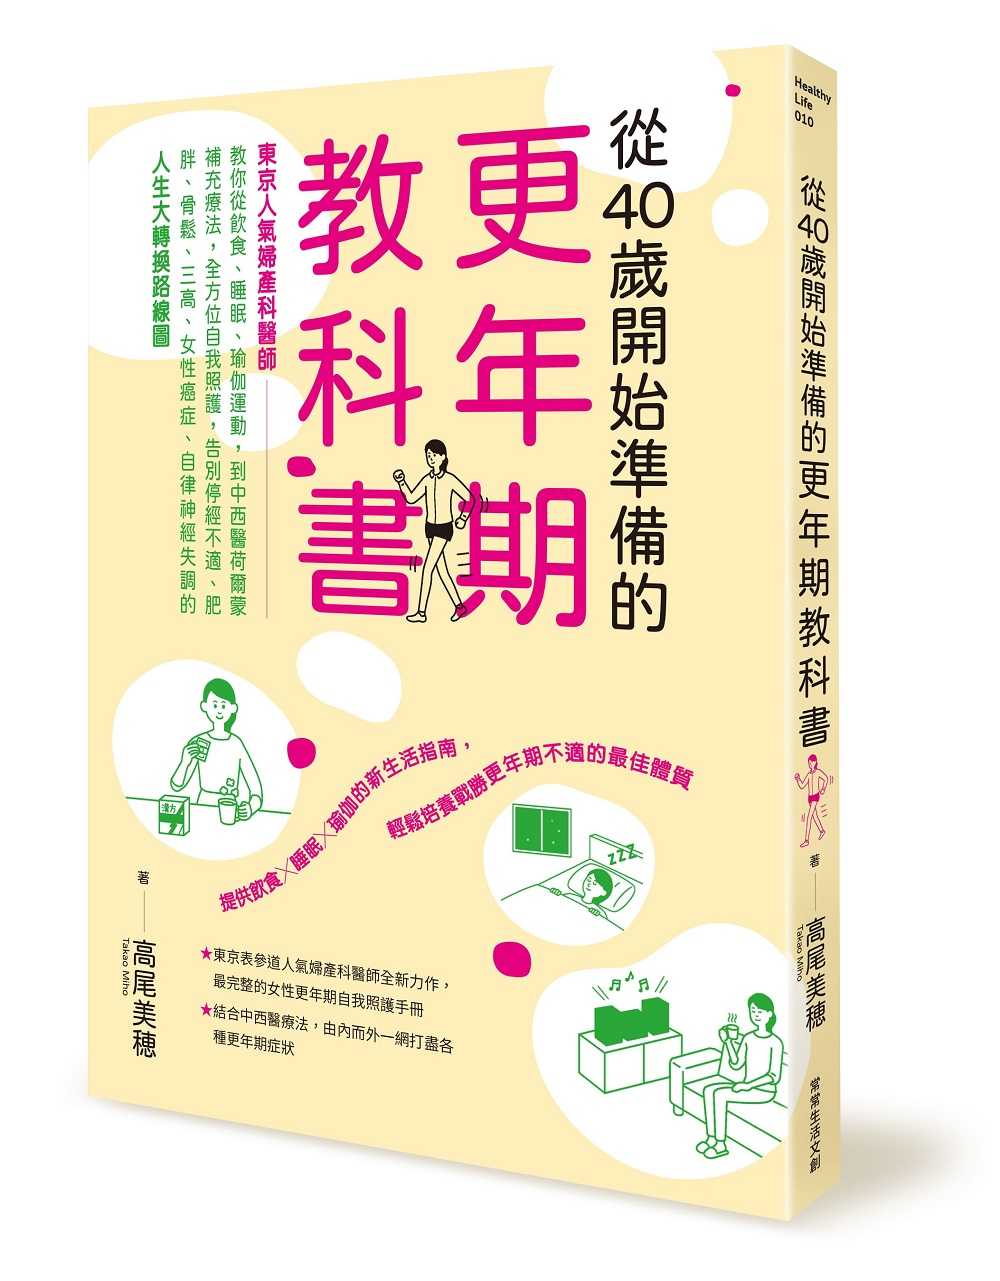 【常常】從40歲開始準備的更年期教科書:「東京人氣婦產科醫師」教你從飲食、睡眠、瑜伽運動，到中西醫荷爾蒙補充療法